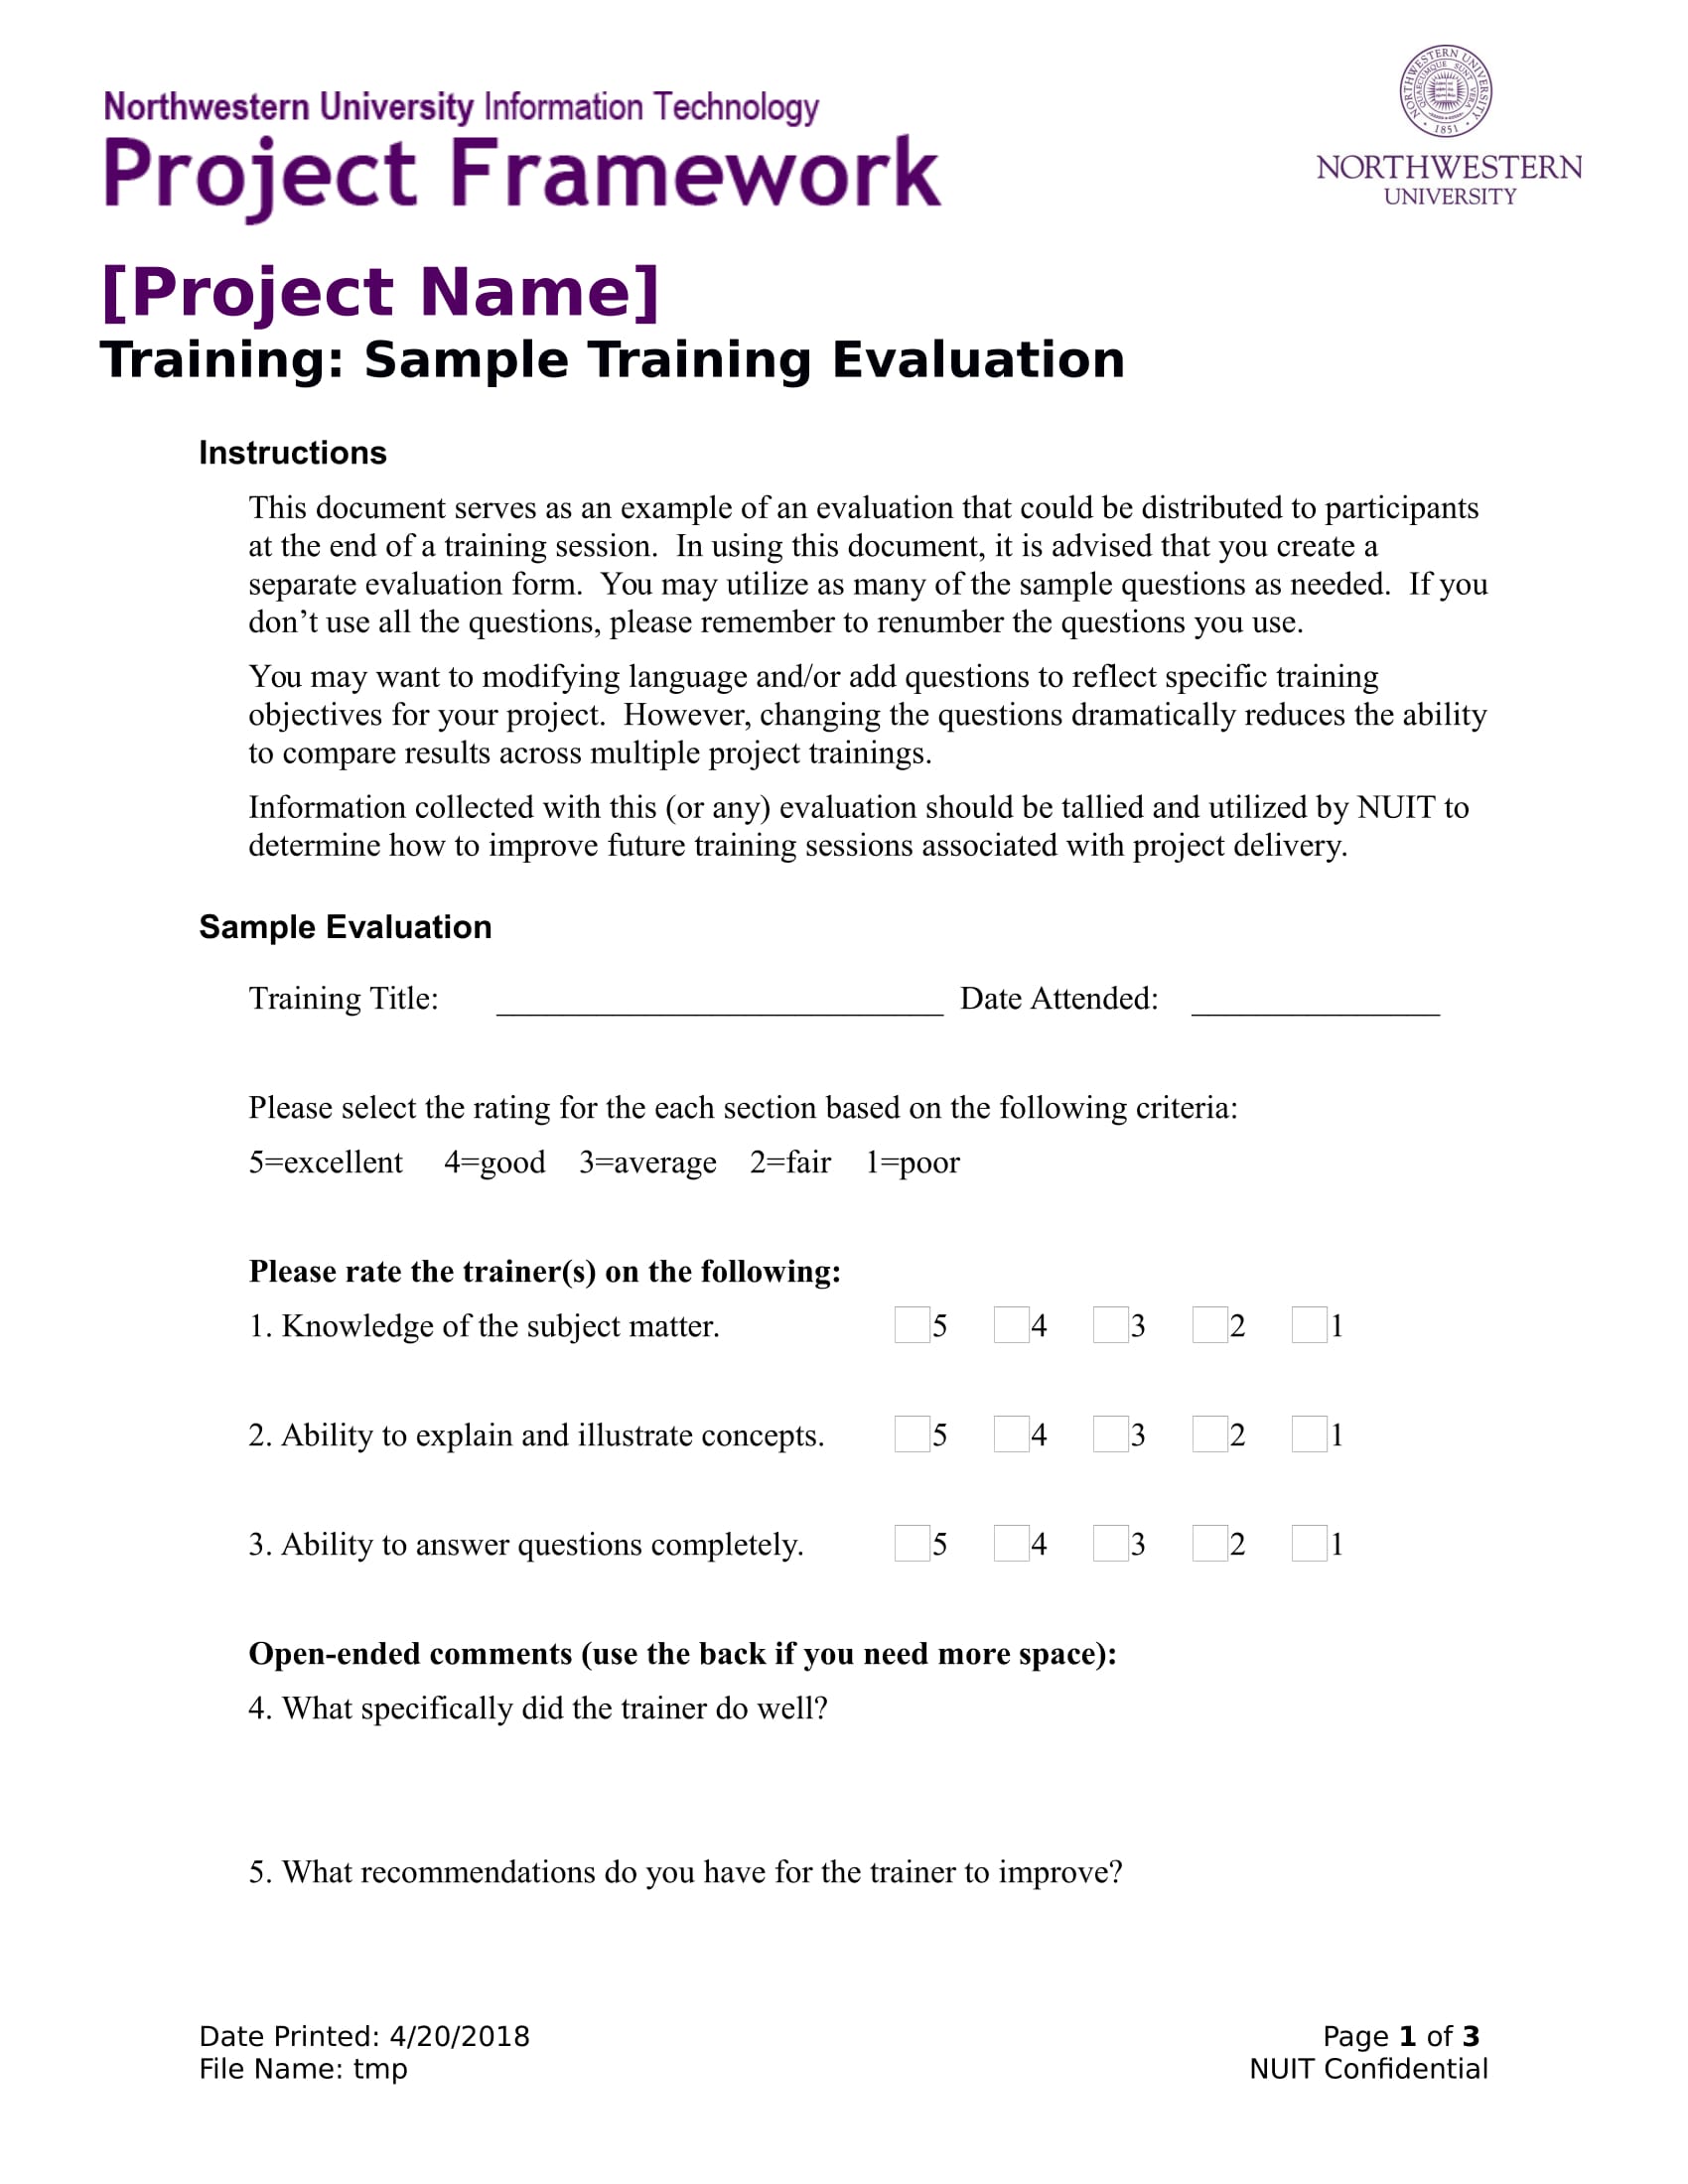 training evaluation survey 1